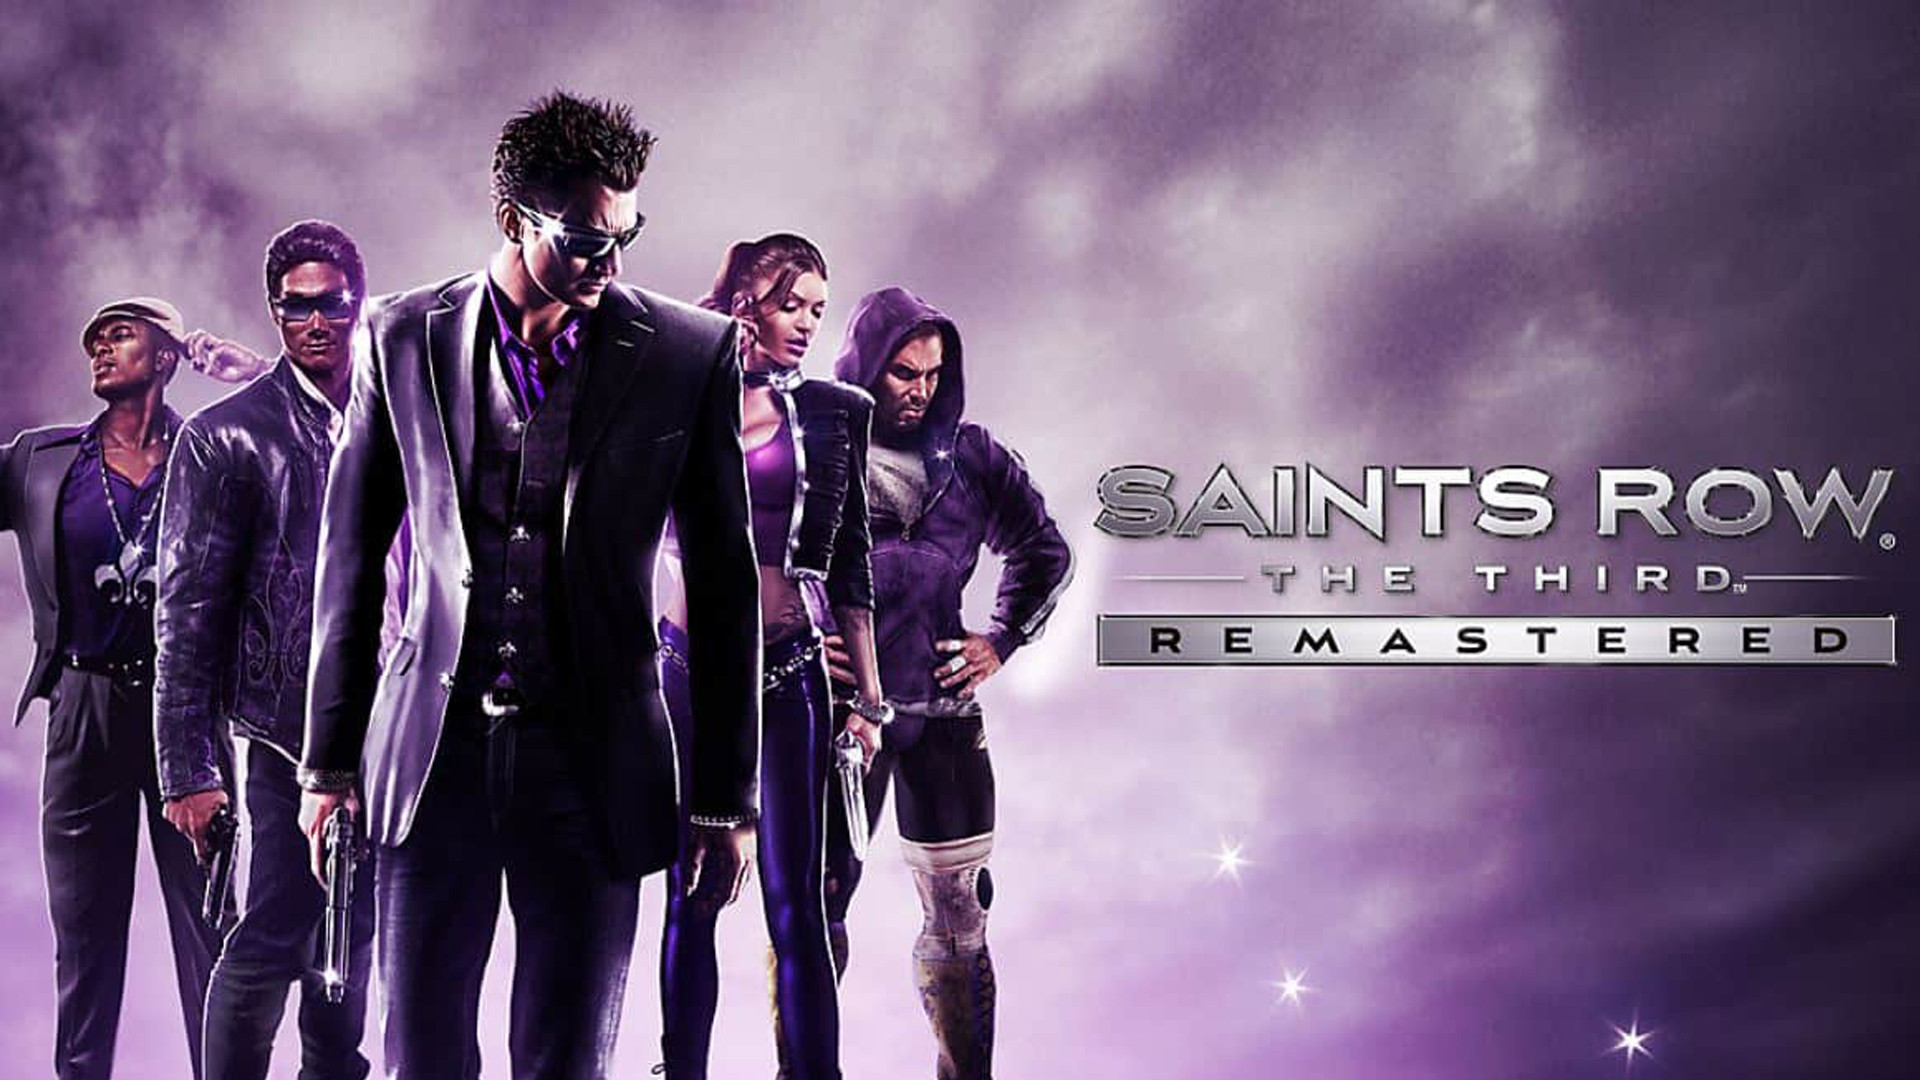 Saints Row The Third Remastered dans l'Epic Games Store, comment l'avoir gratuitement sur l'EGS ?